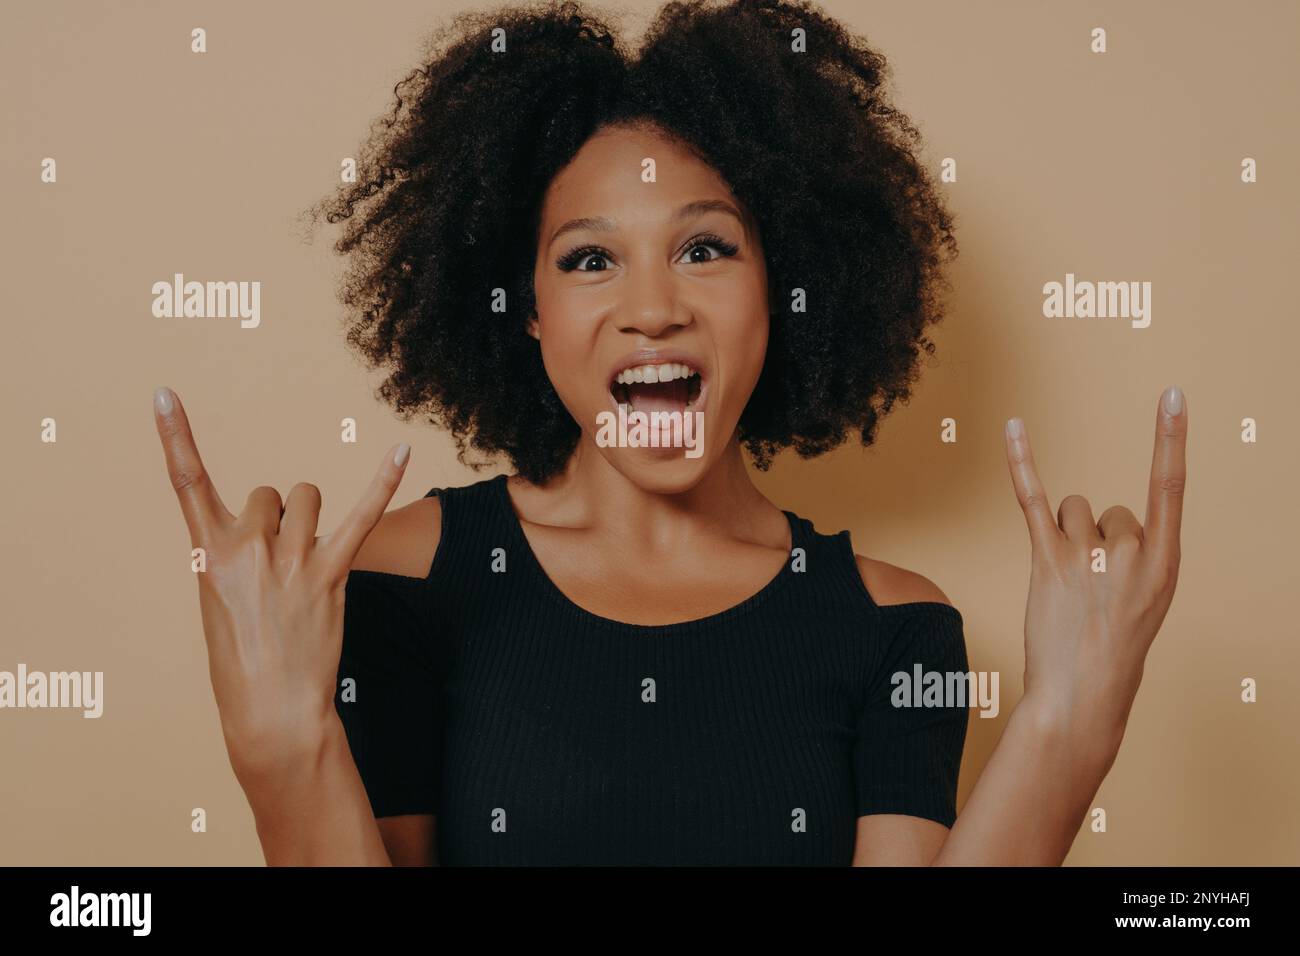 Junge afroamerikanische Frau, die ein schwarzes T-Shirt trägt, mit verrücktem Gesichtsausdruck schreit und Rock-n-Roll-Symbol macht, mit erhobenen Händen wie der Musikstar Isolat Stockfoto